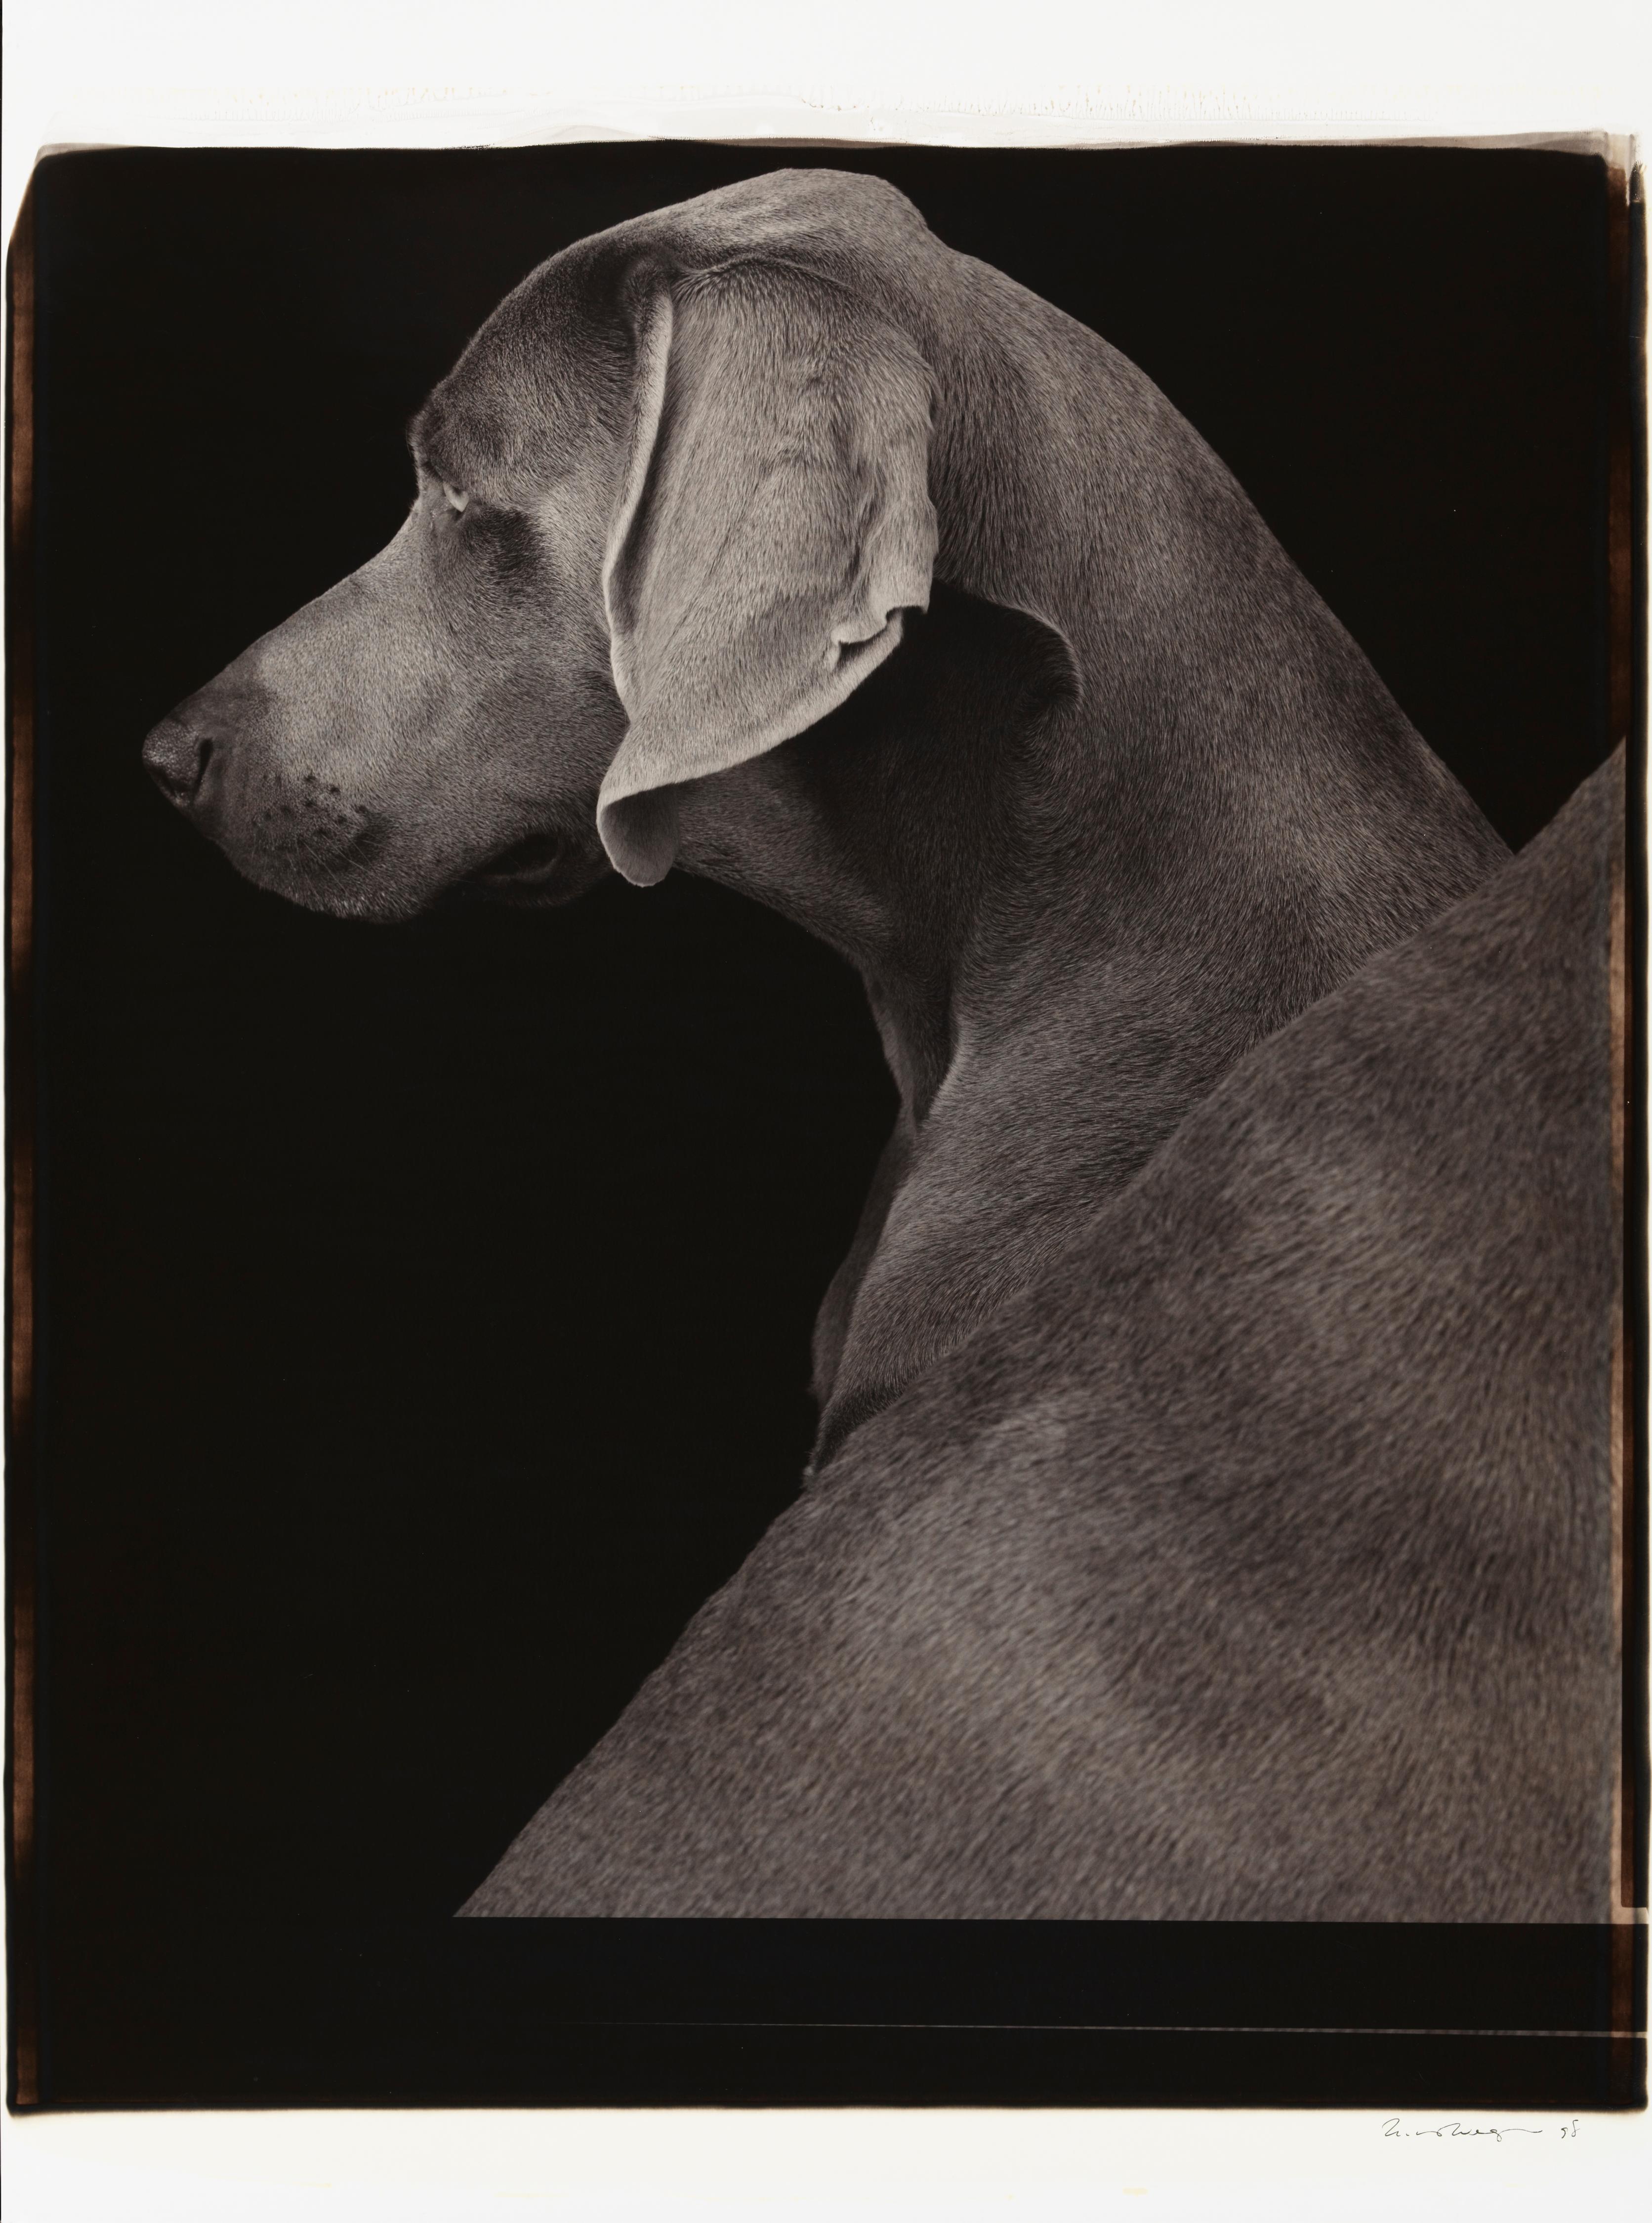 Vues latérales - William Wegman (Photographie en couleur)
Signé et inscrit avec le titre
Tirage polaroïd noir et blanc unique, imprimé en 1998
24 x 20 pouces

Les chiens, perruqués et parés de tenues et d'accessoires, présentent un large éventail de